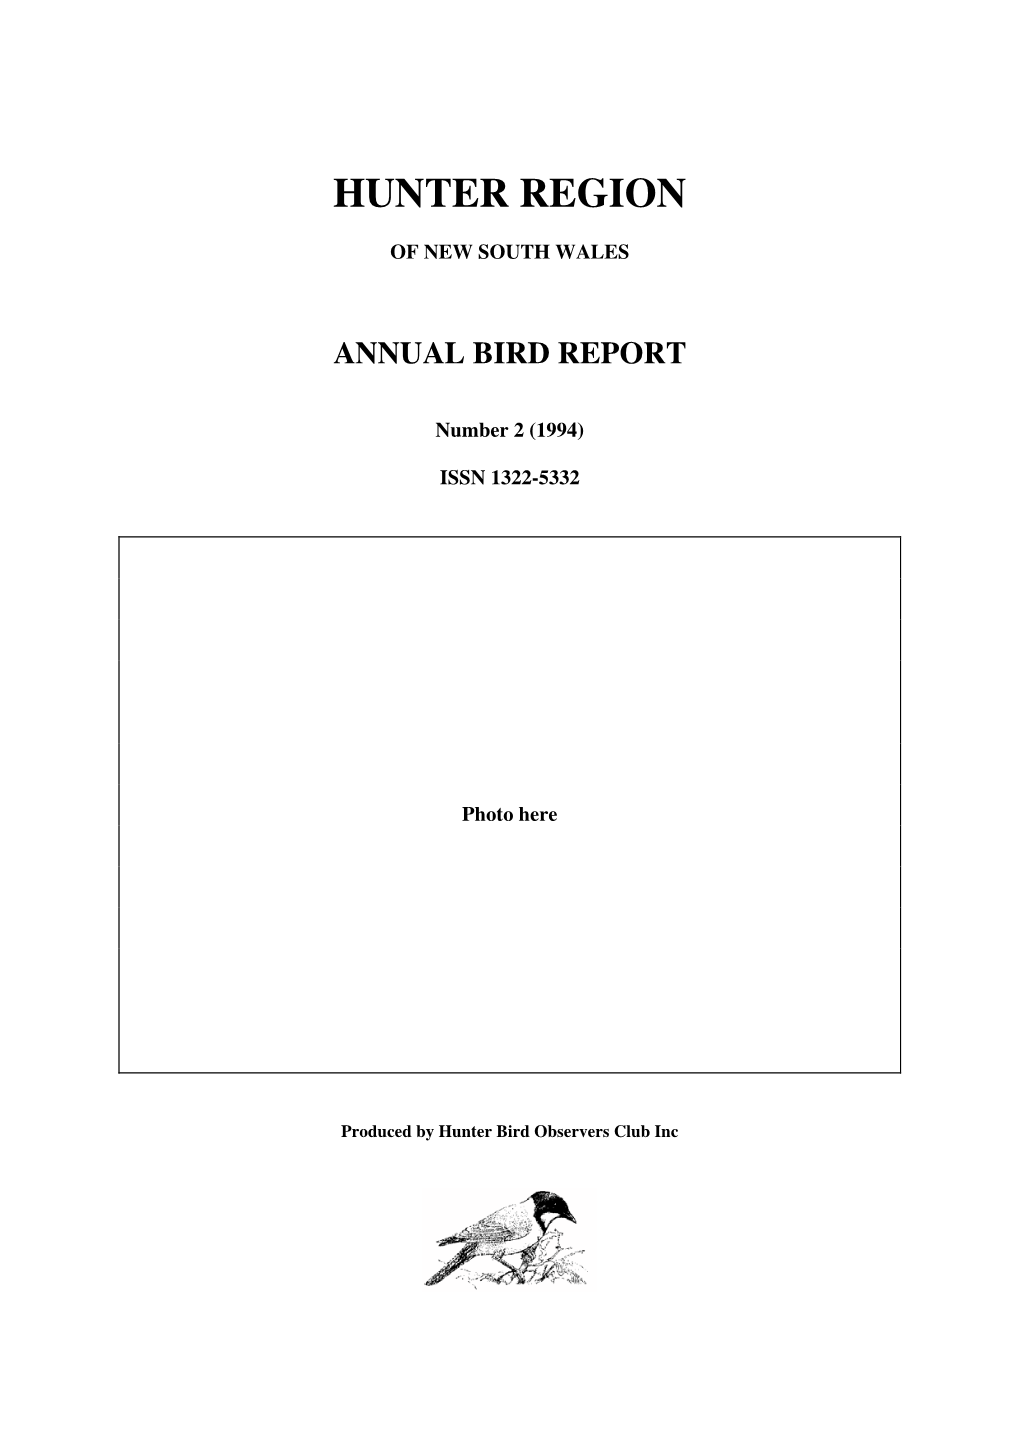 1994 HBOC Bird Report